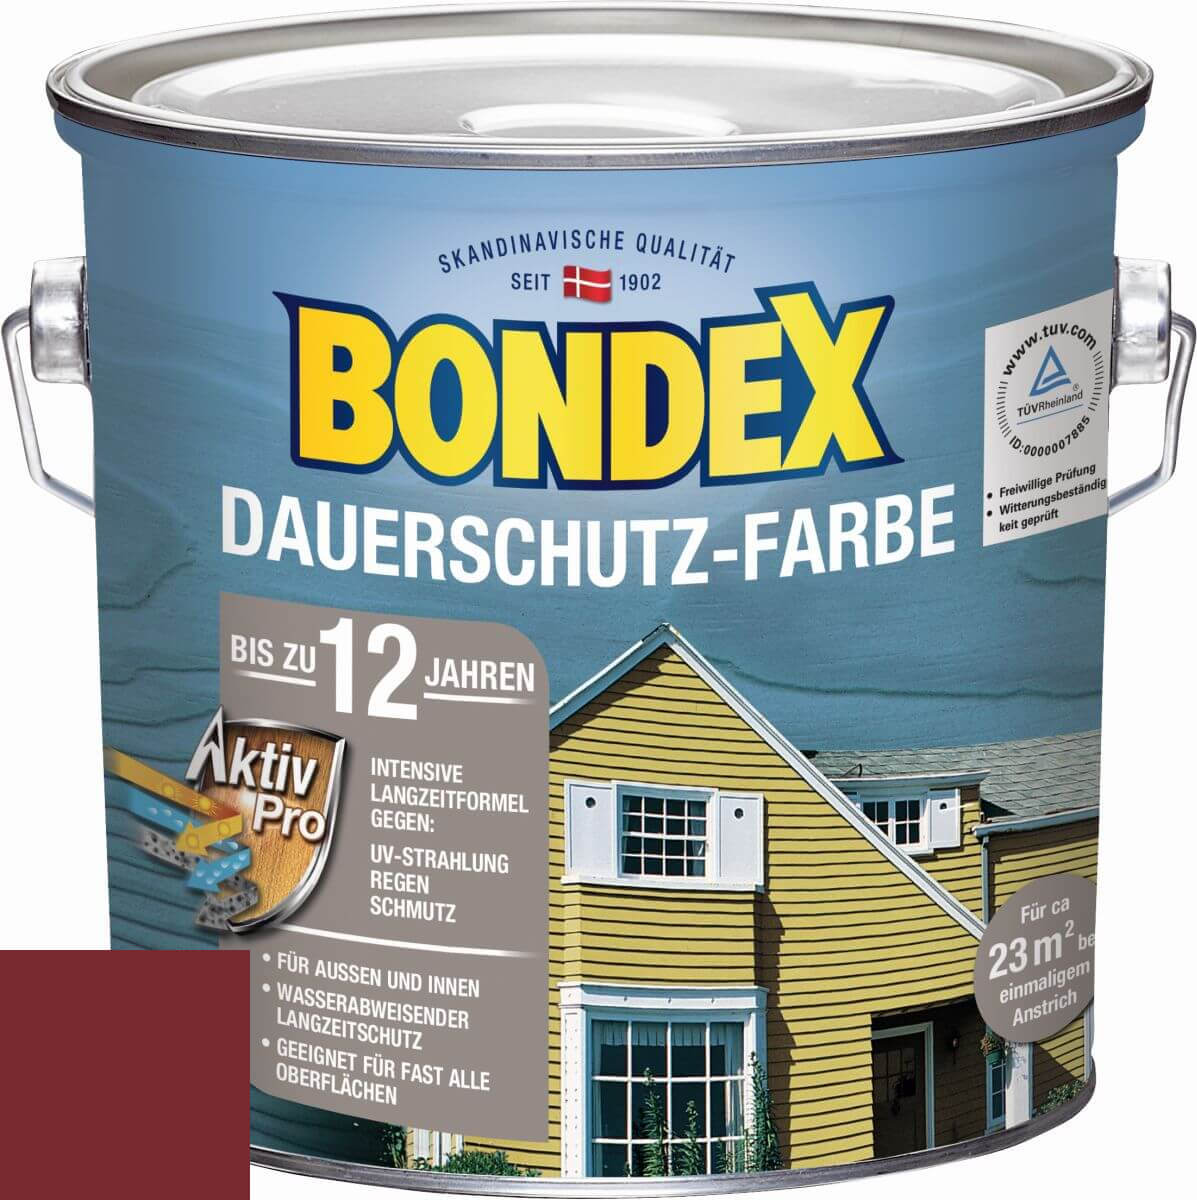 BONDEX Dauerschutz-Farbe 2,5 L in Schwedenrot, hochdeckende Holzfarbe, Intensivschutz